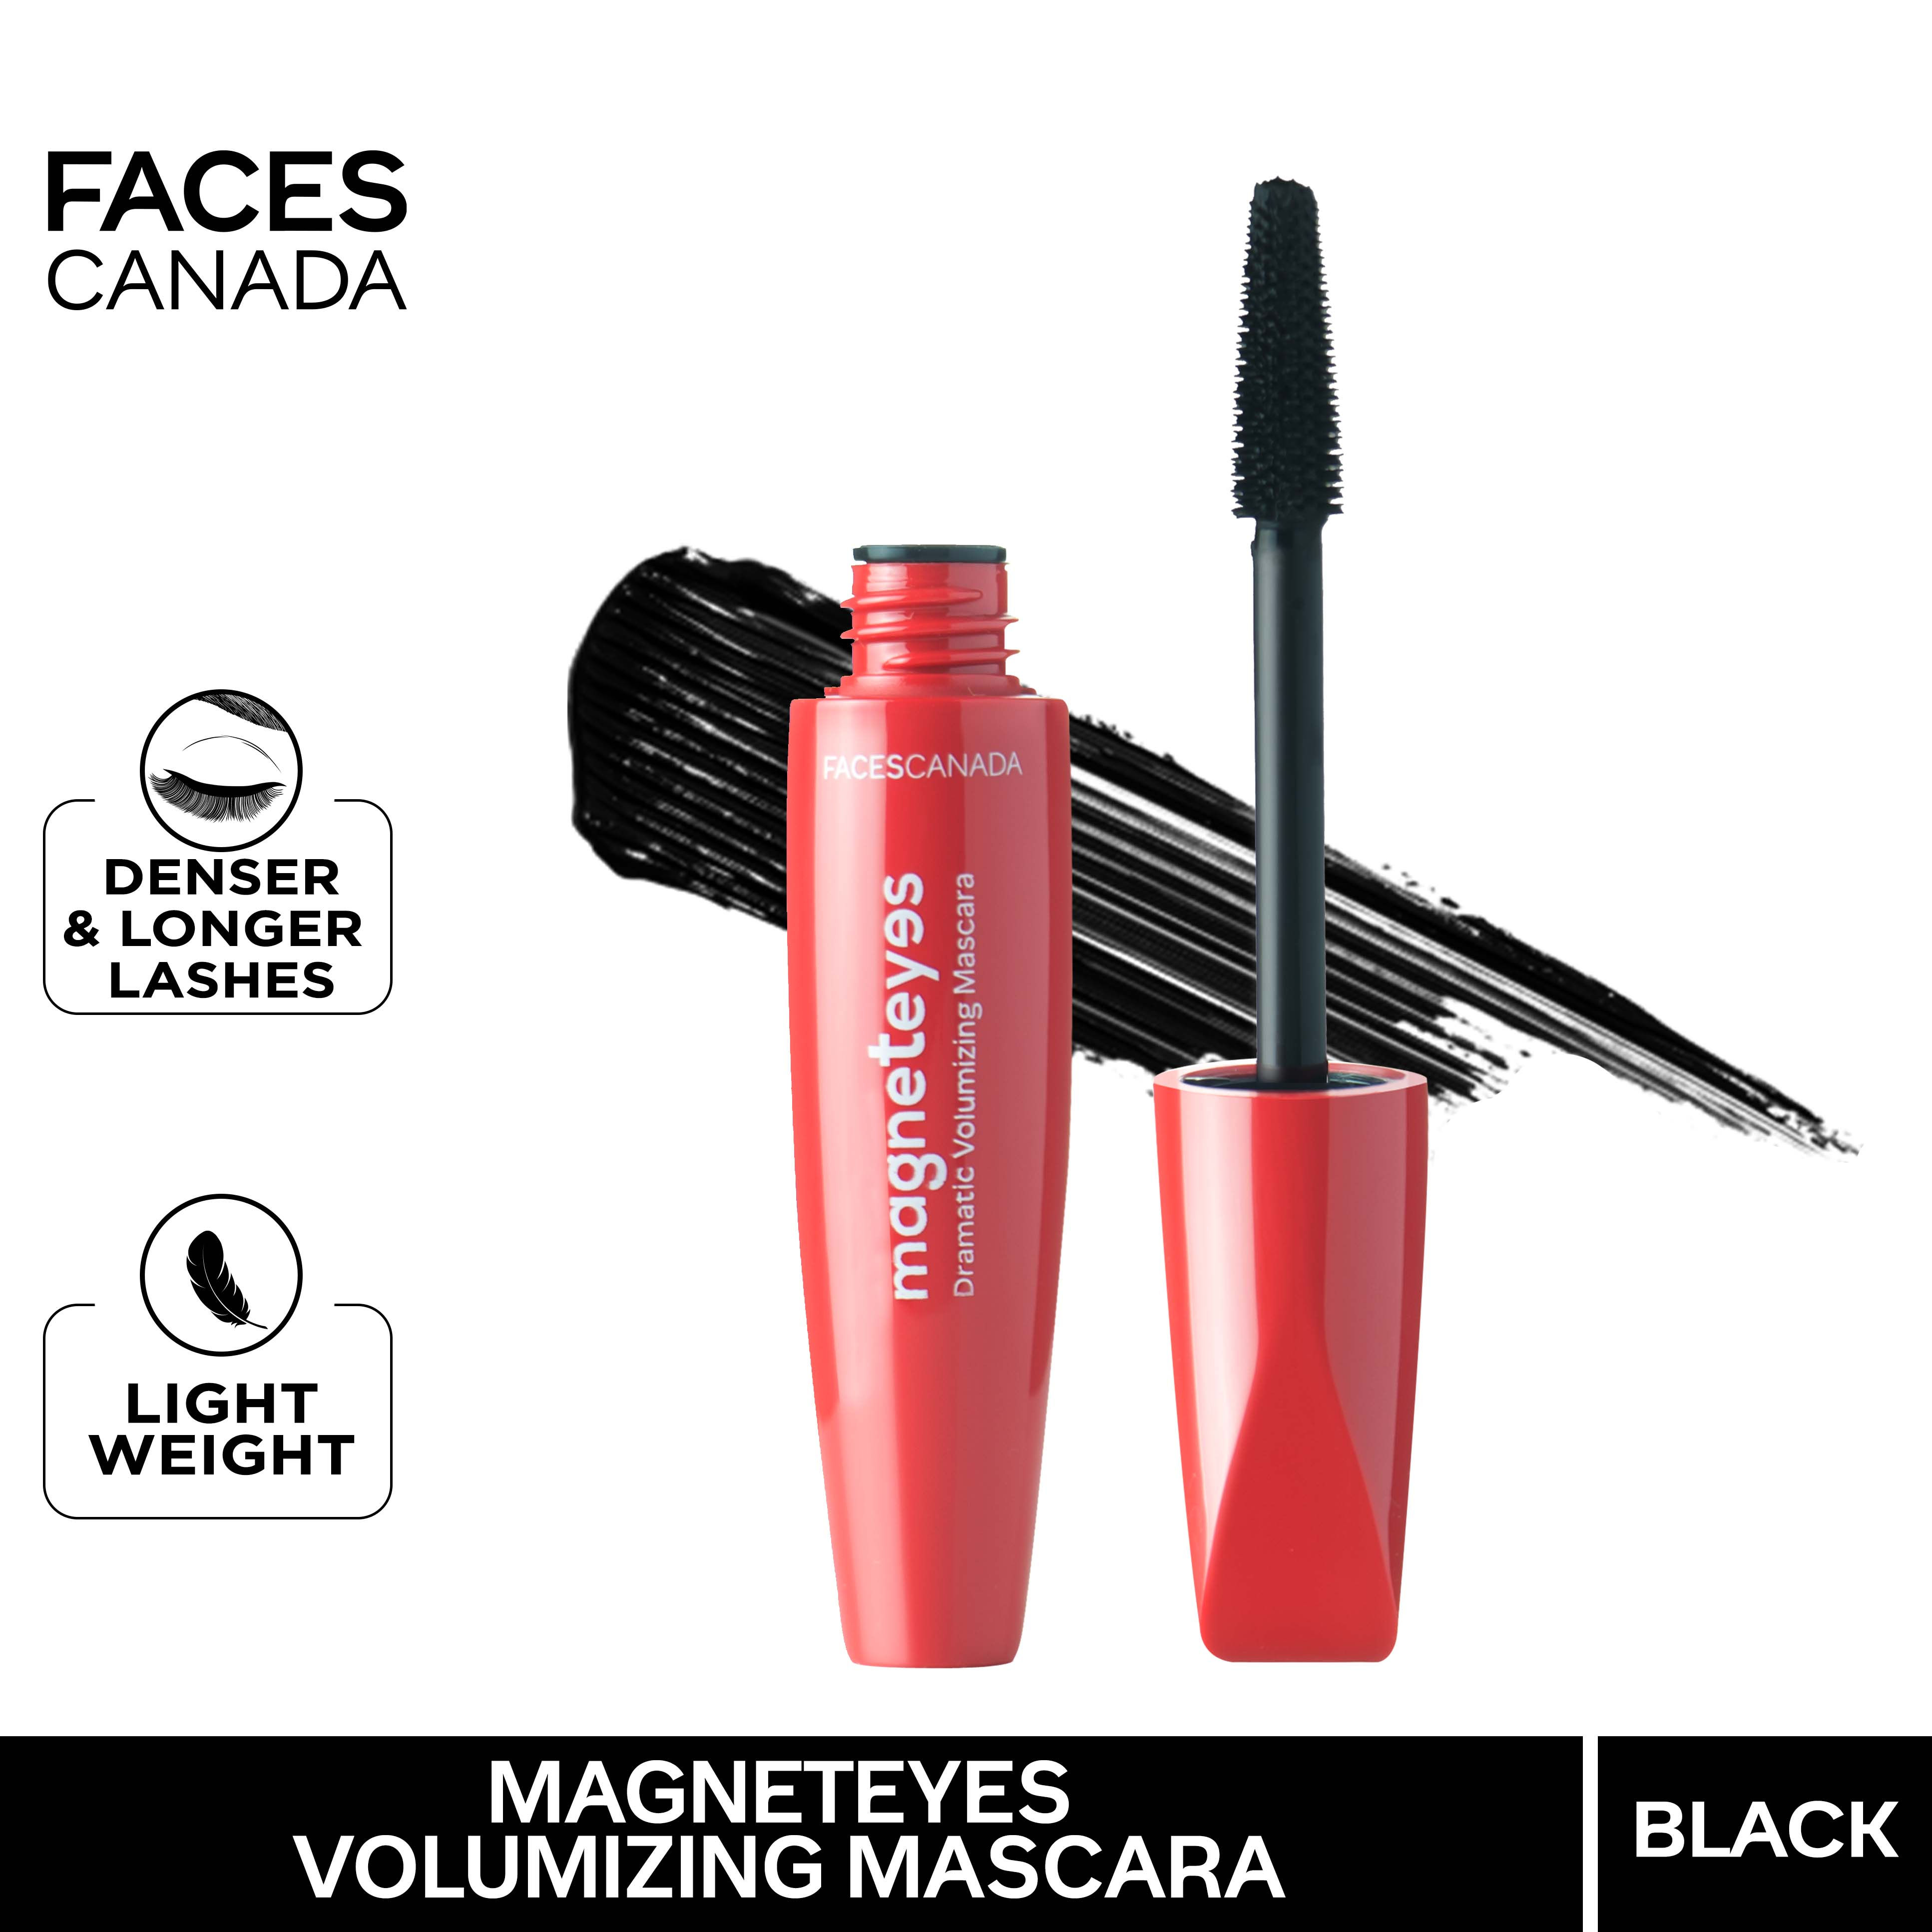 Faces Canada Magneteyes Dramatic Volumizing Mascara Intense Black Finish